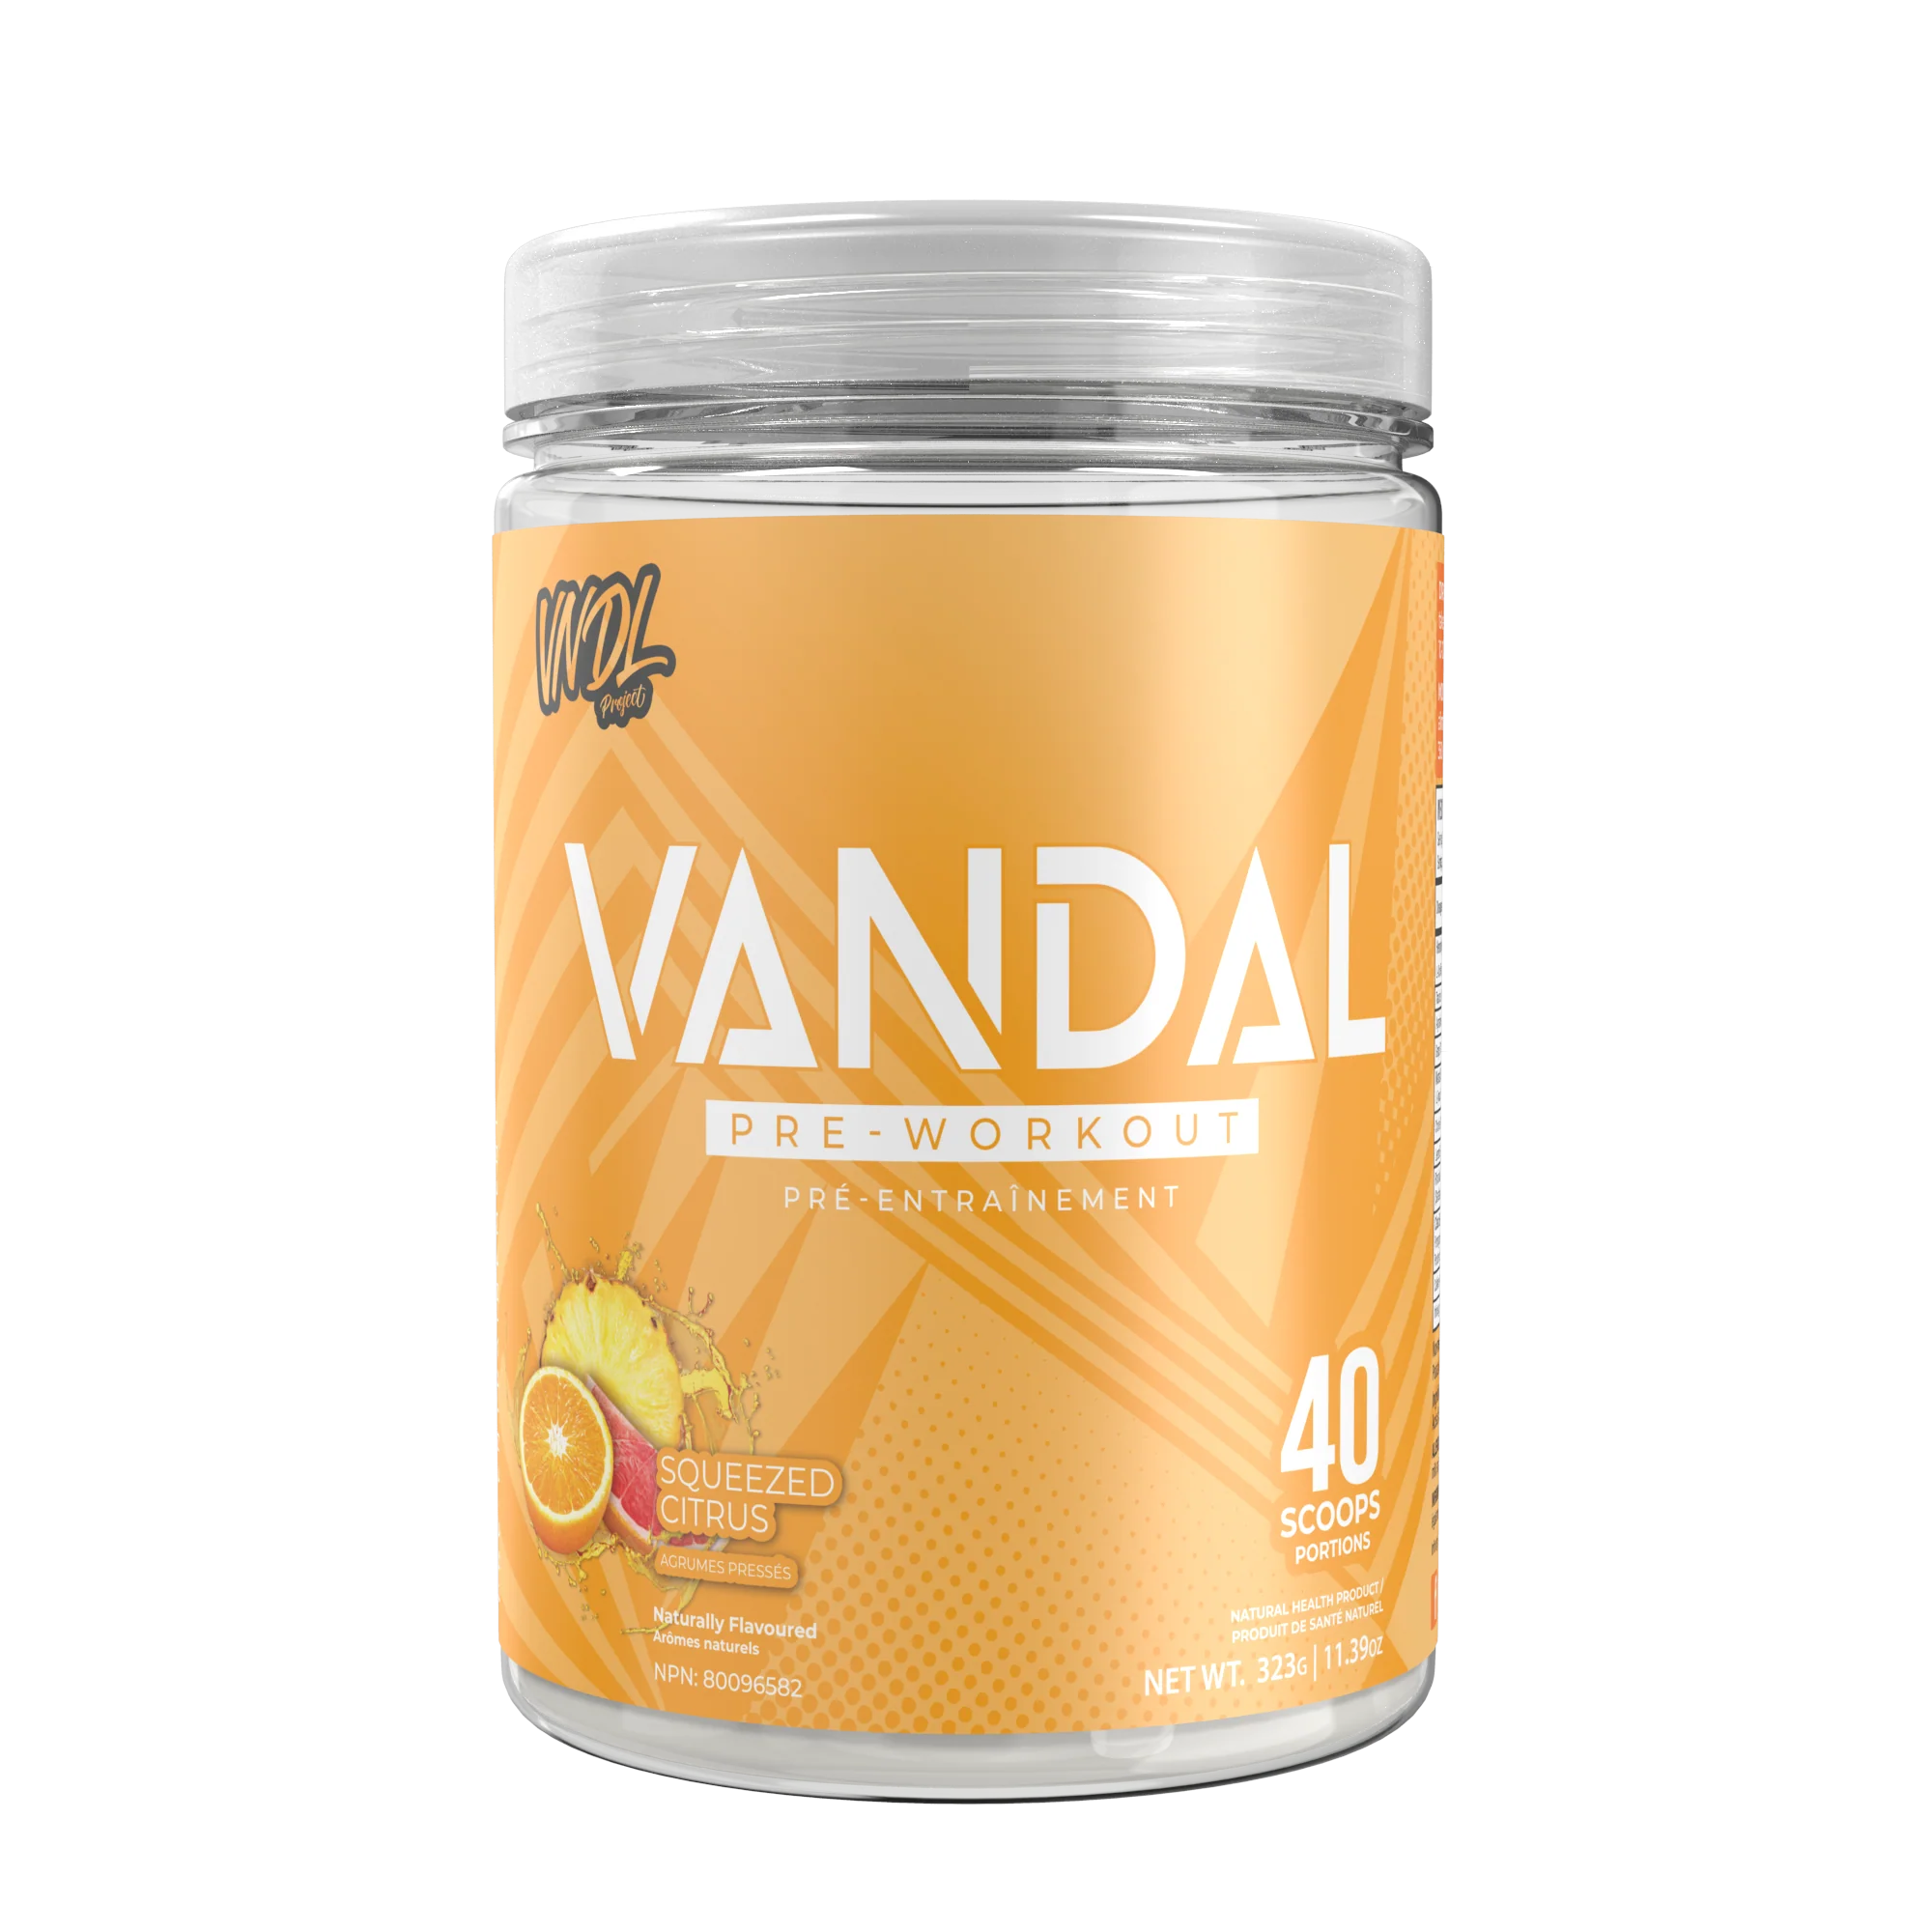 VANDAL PRE-WORKOUT (Squeezed Citrus)